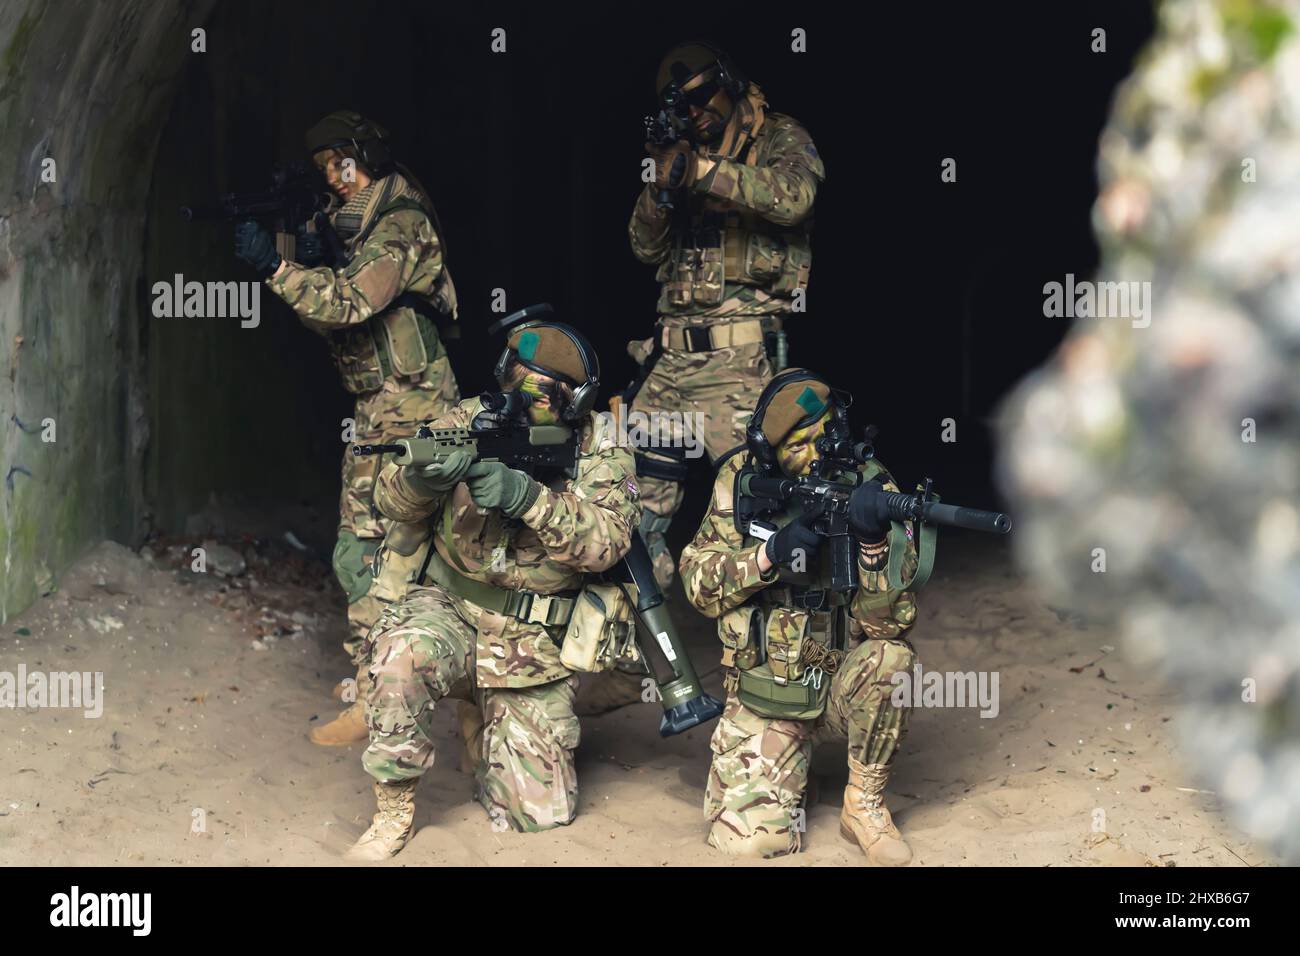 Tutta la rappresentanza di genere in esercito militare posando nelle grotte . Foto di alta qualità Foto Stock